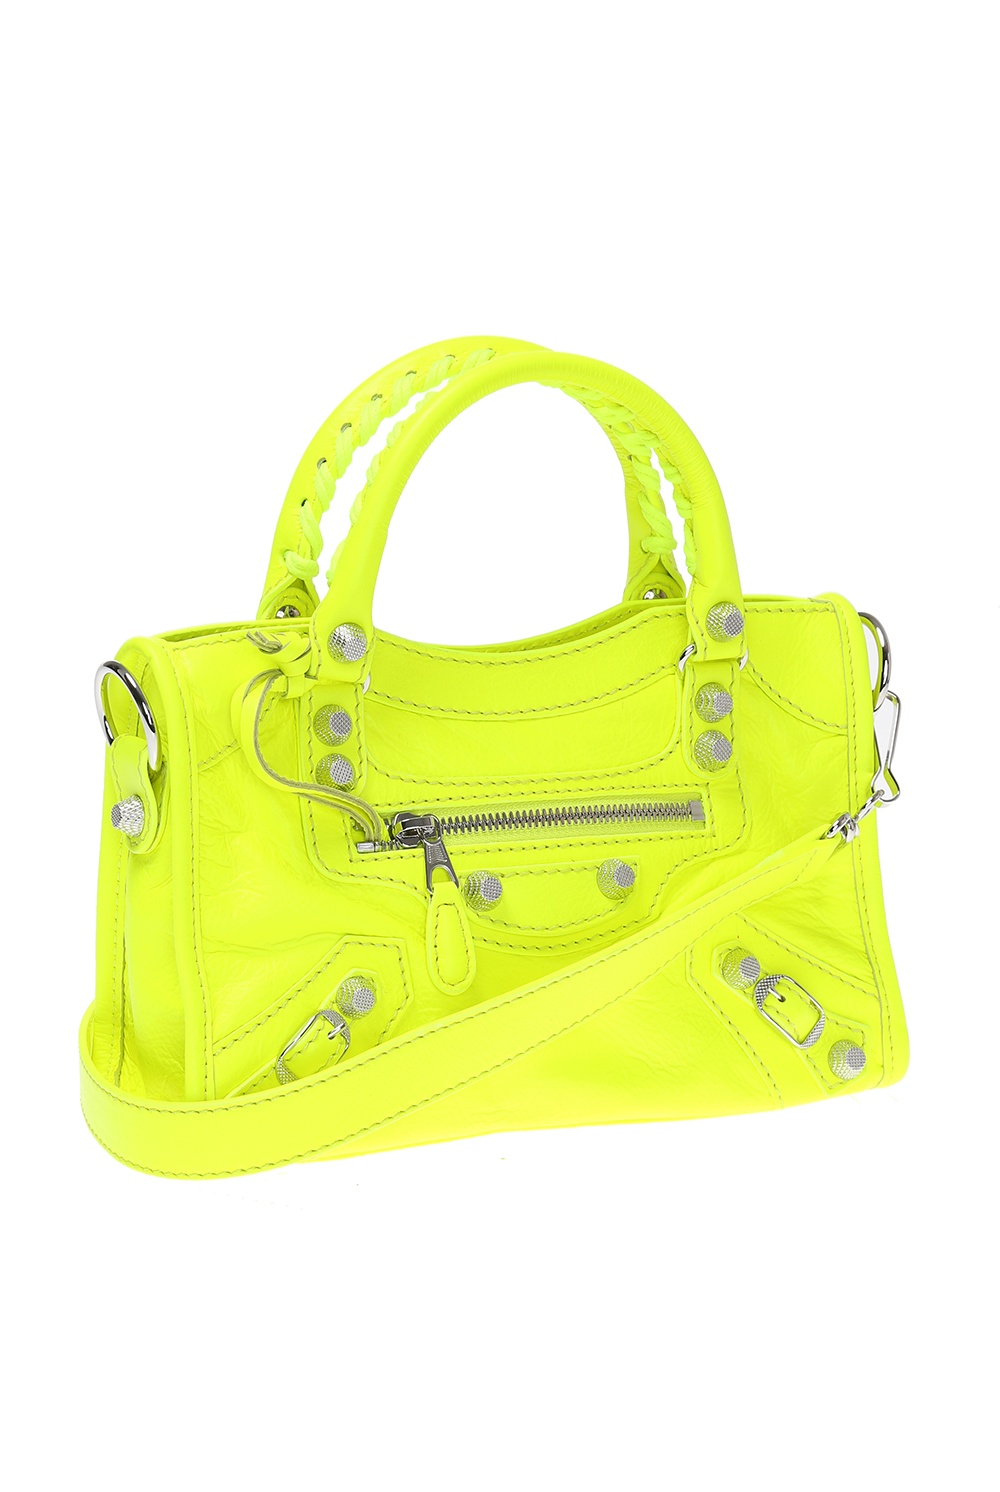 balenciaga neon yellow bag